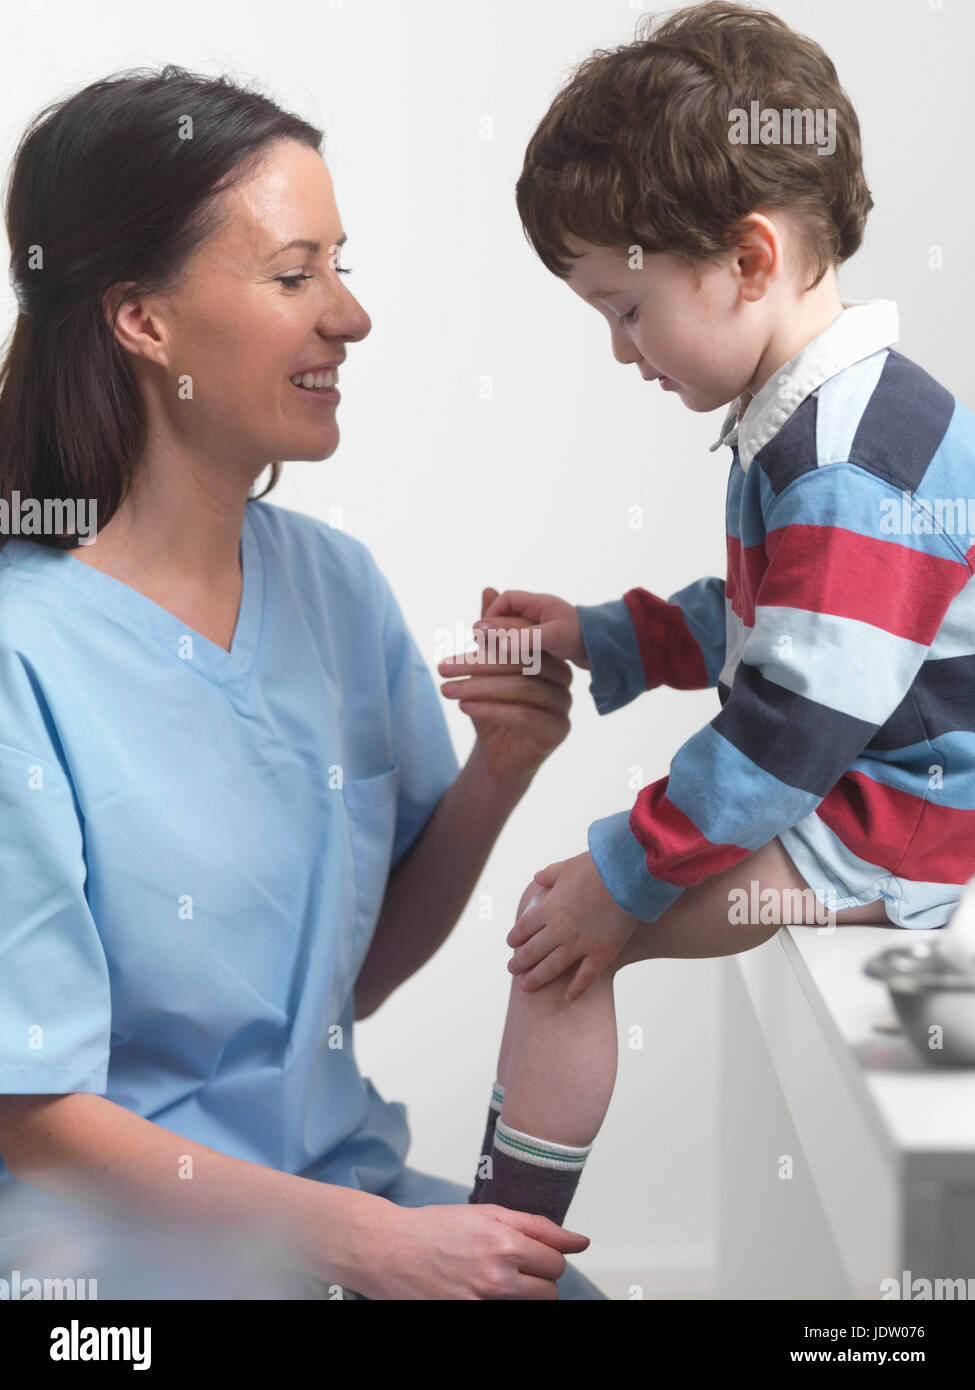 Nurse talking to boy in doctors office Stock Photo